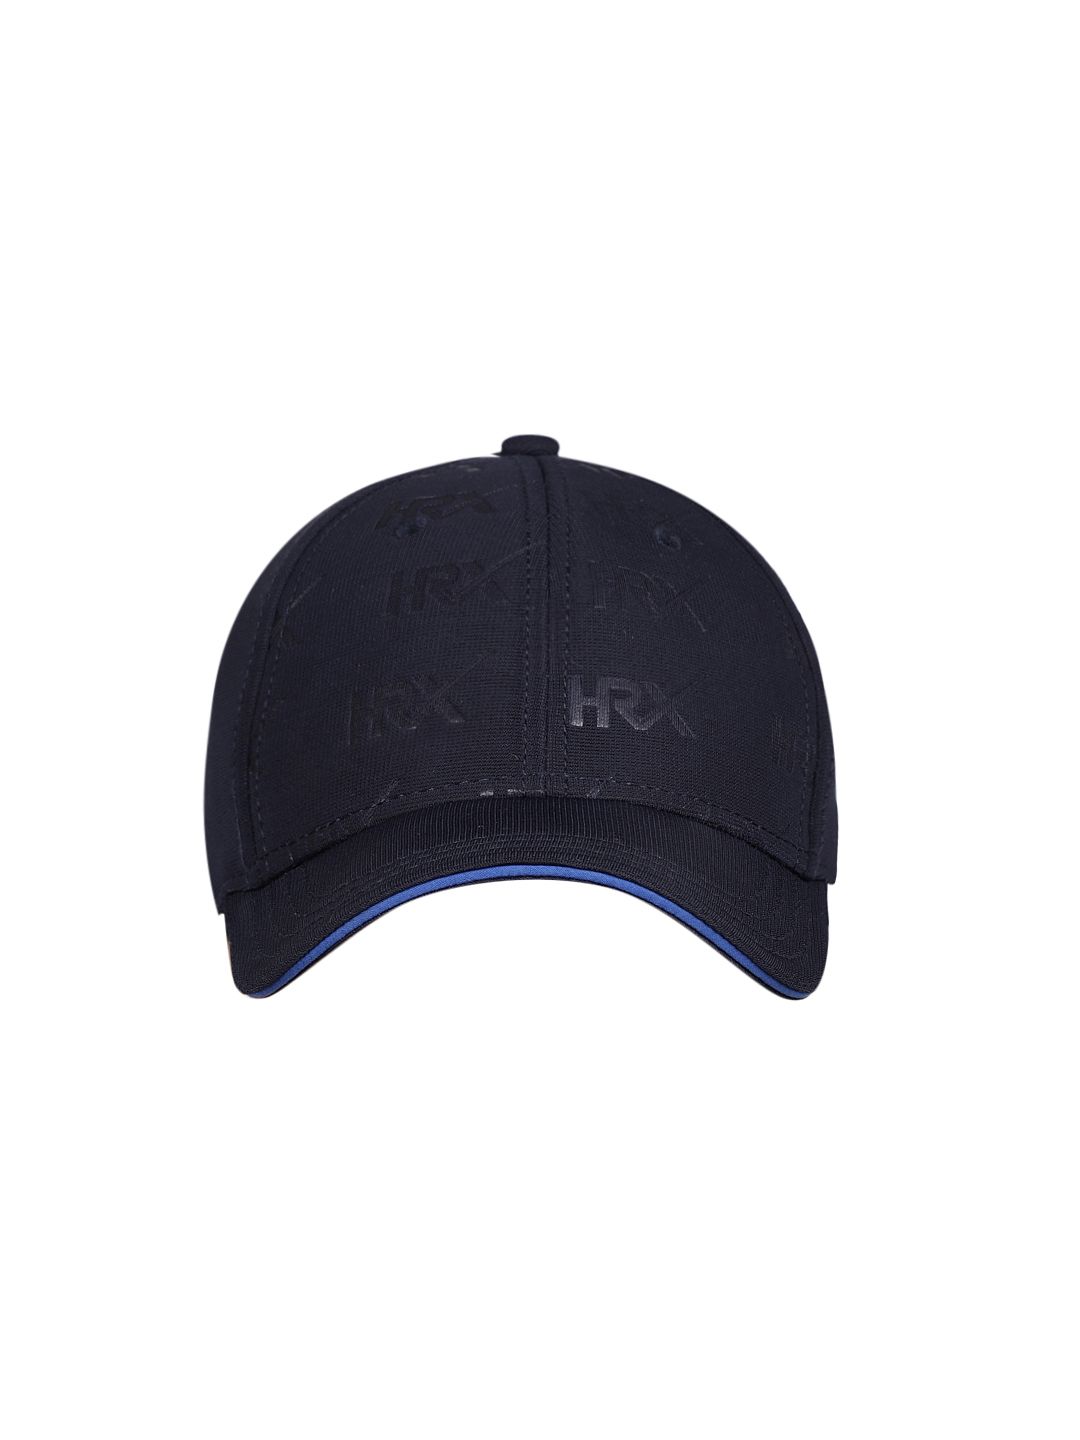 HRX by Hrithik Roshan Unisex Navy Blue Self Design Baseball Cap Price in India